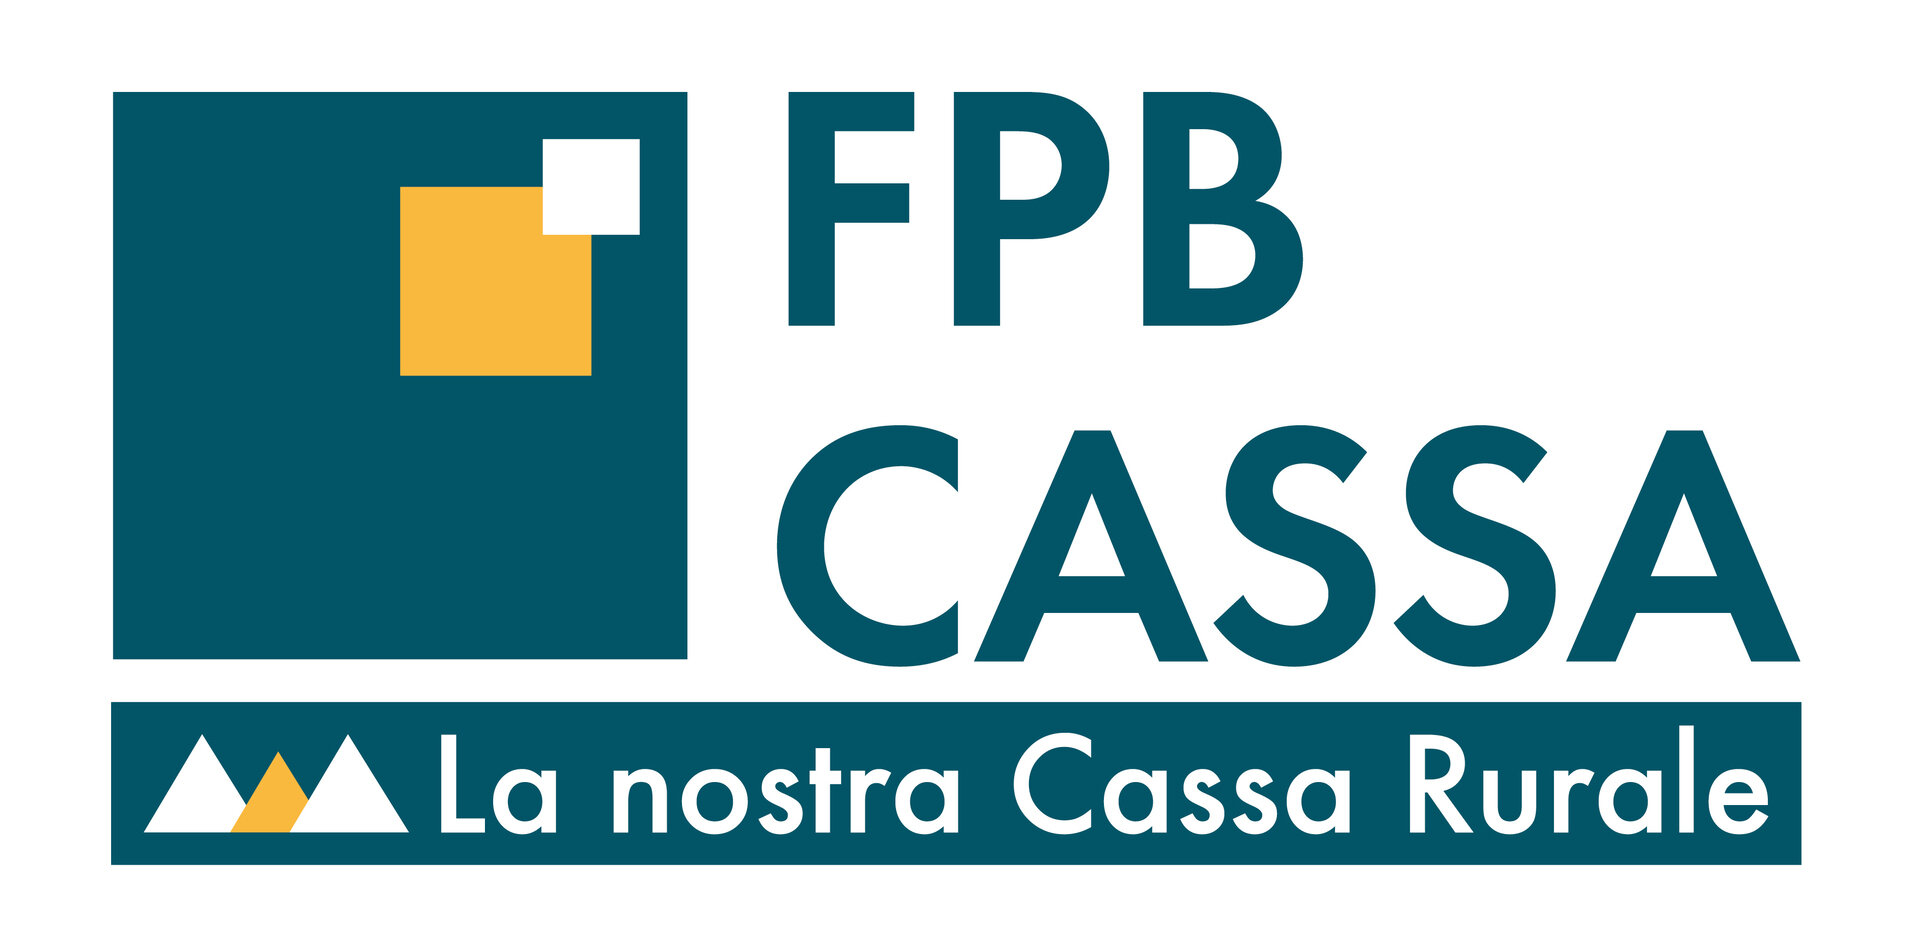 FPB Cassa Di Fassa Primiero Belluno   Zweigstelle Von Vigo Di Fassa